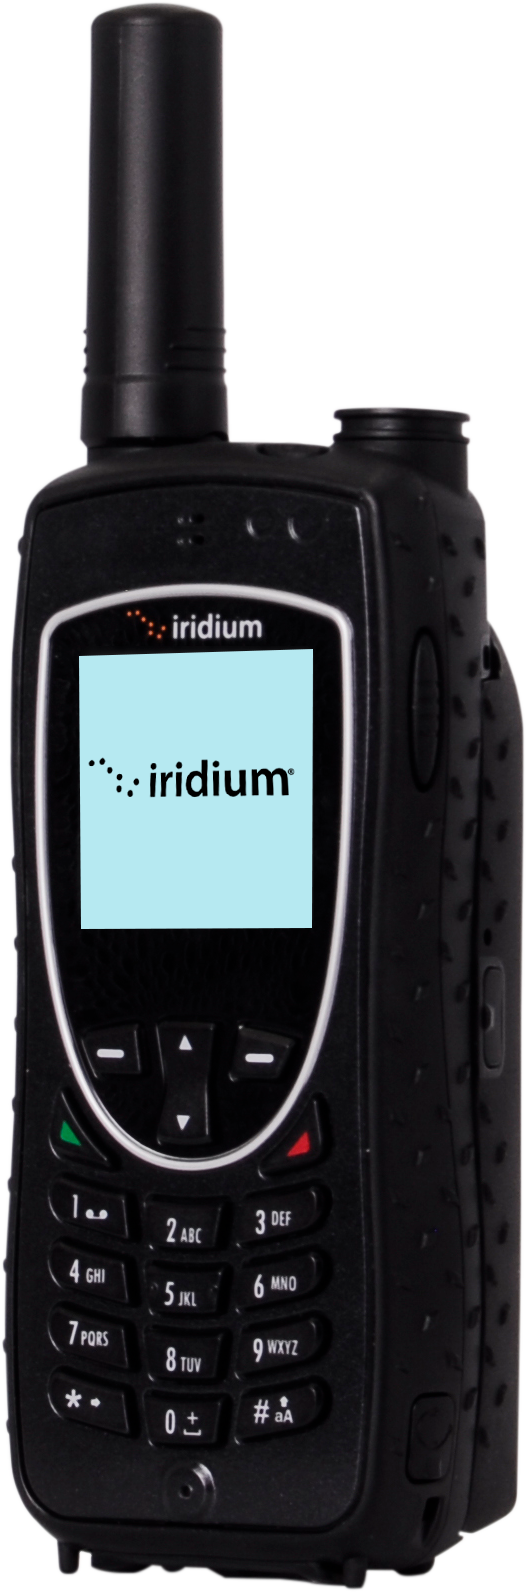 Iridium 9575A Product Image